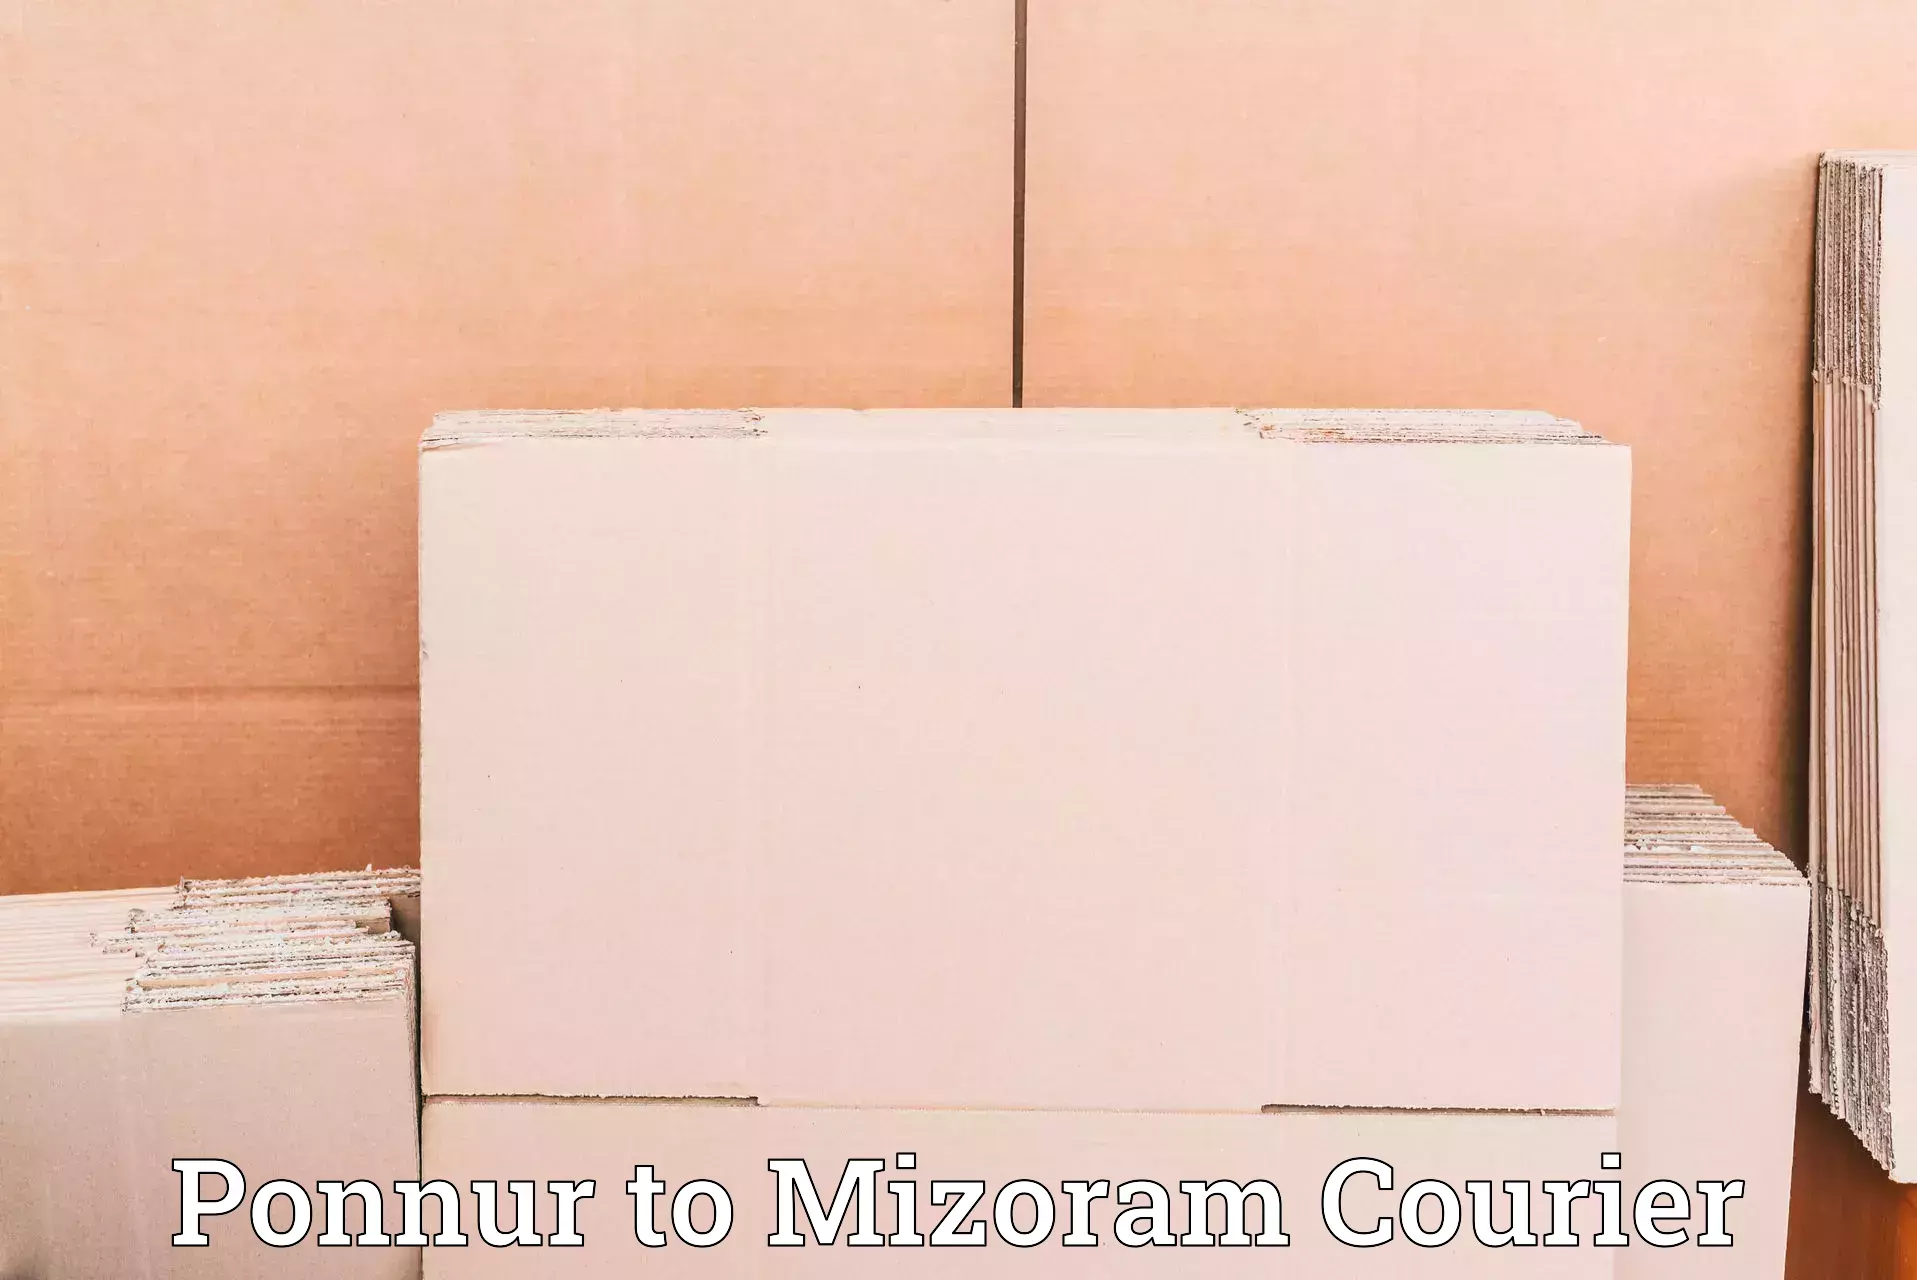 Next-generation courier services Ponnur to Aizawl